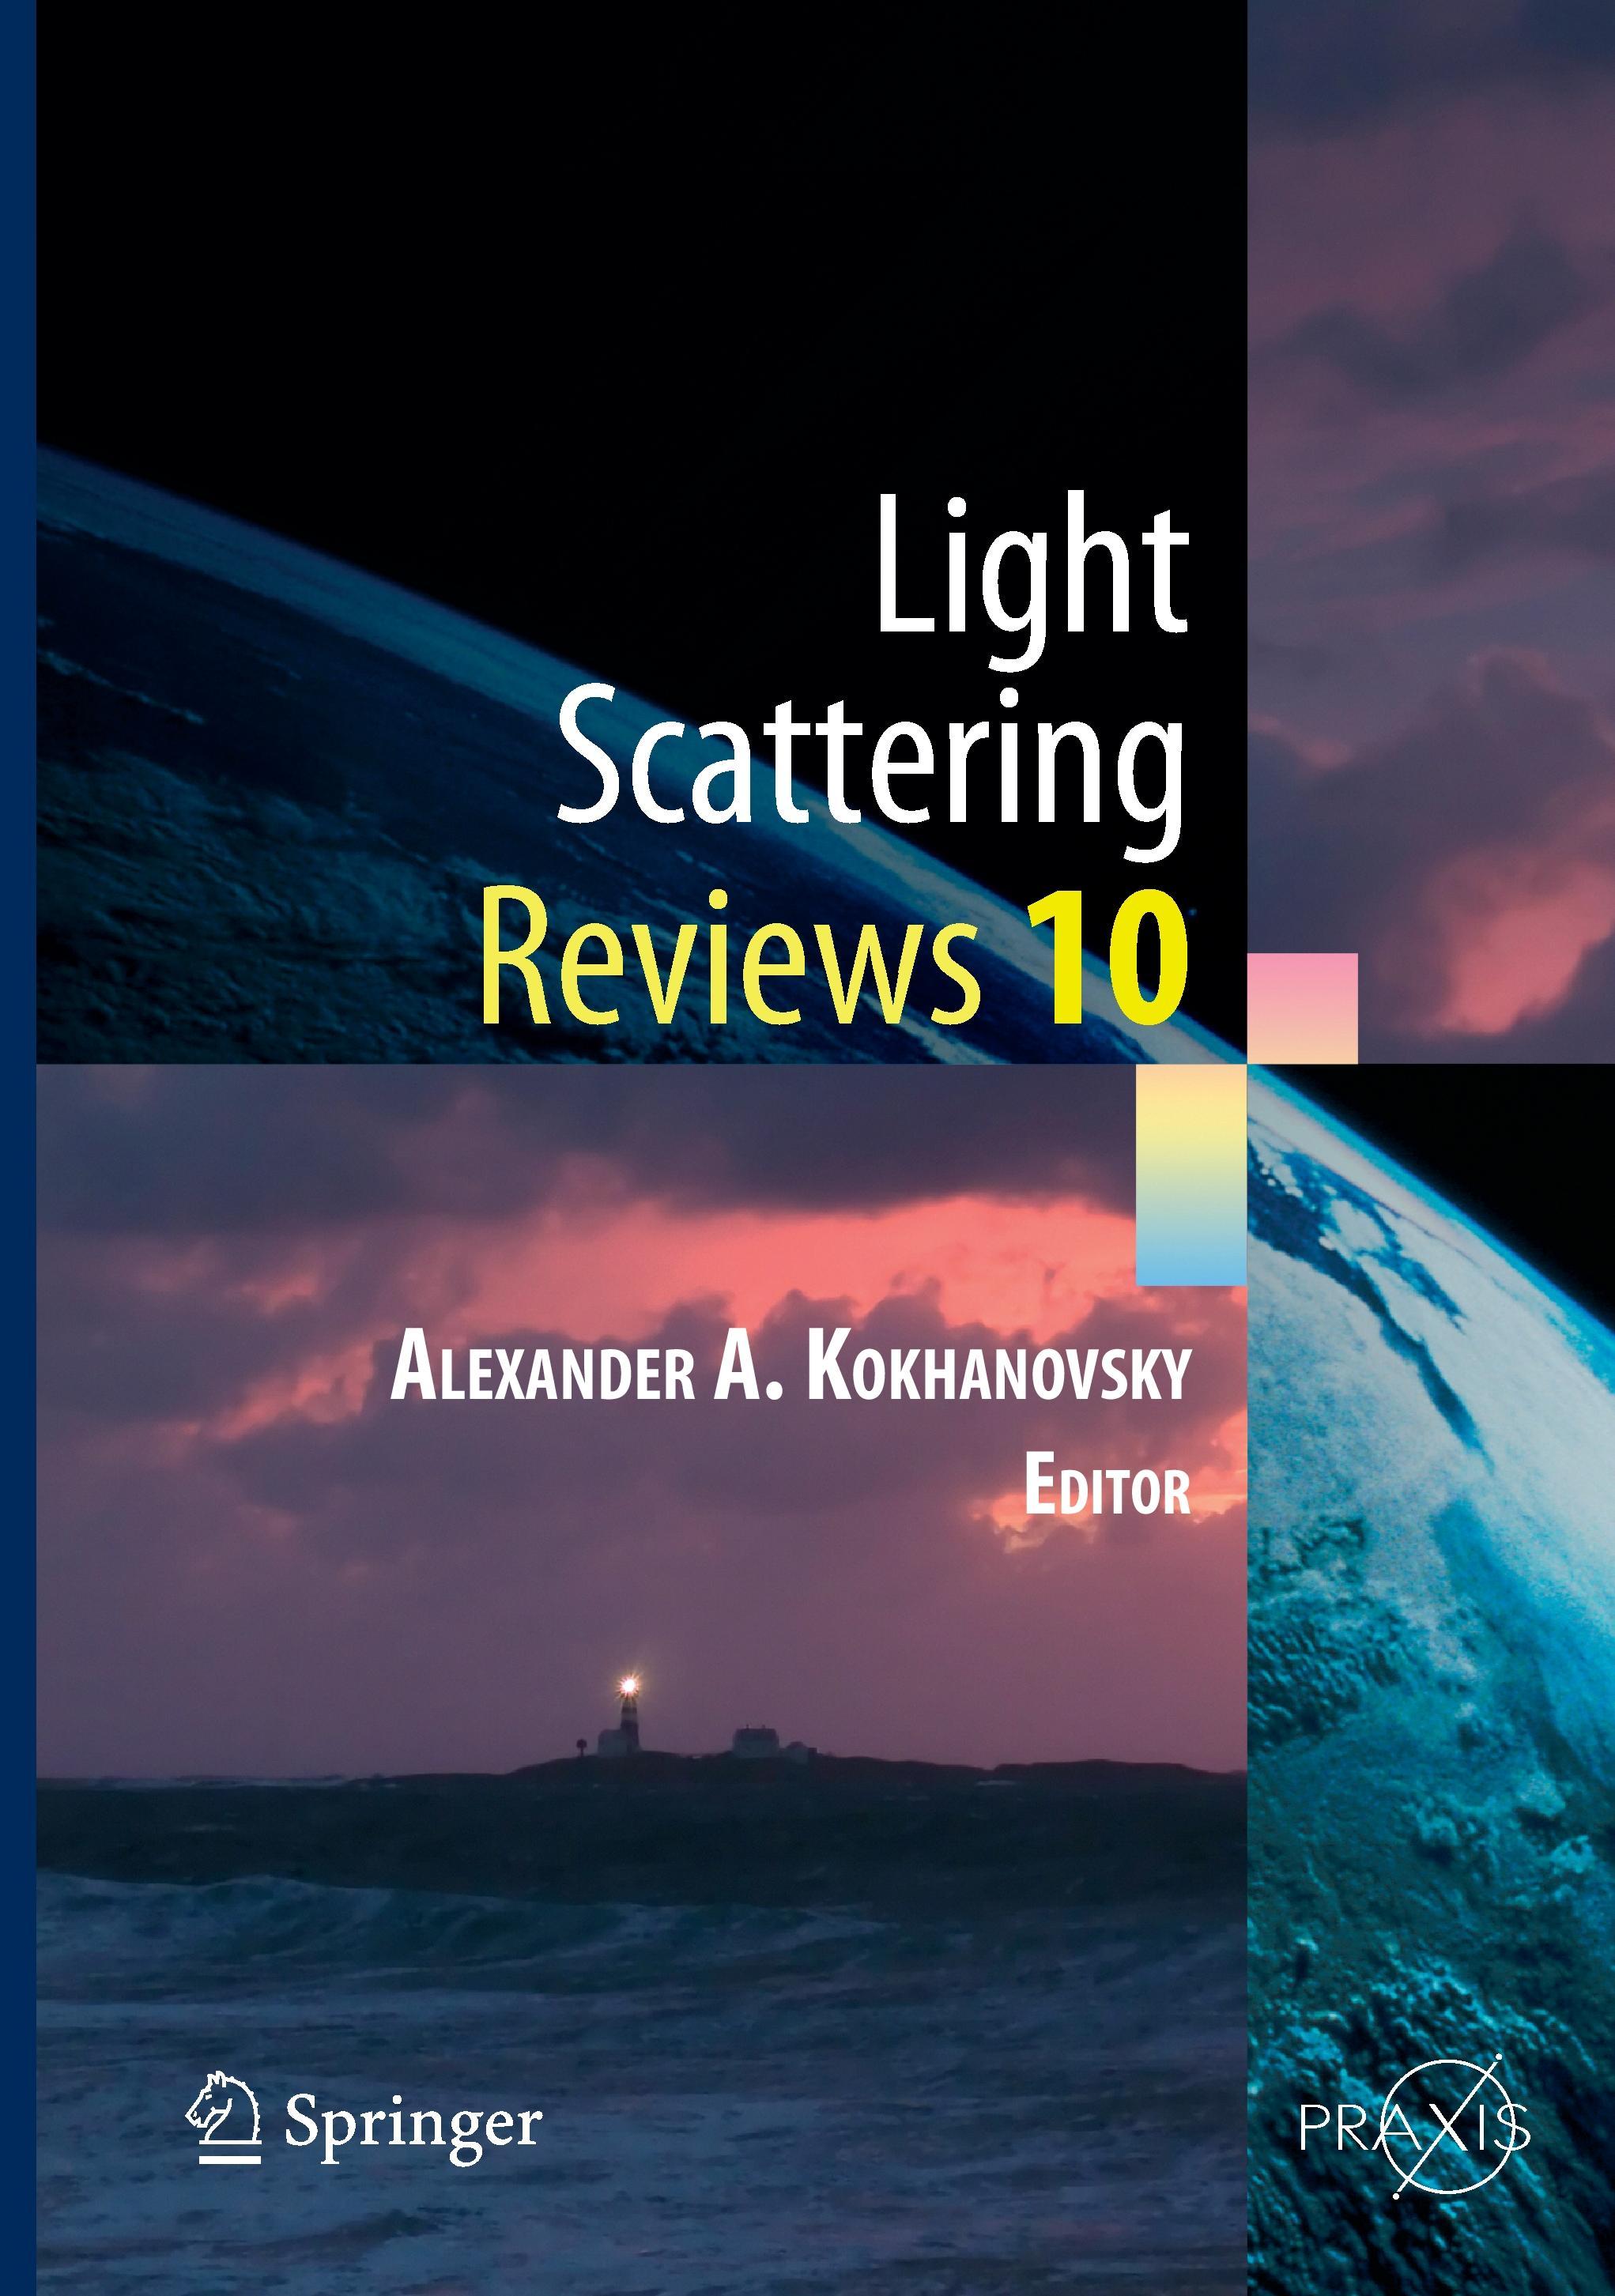 Light Scattering Reviews Vol. 10 - Alexander A. Kokhanovsky